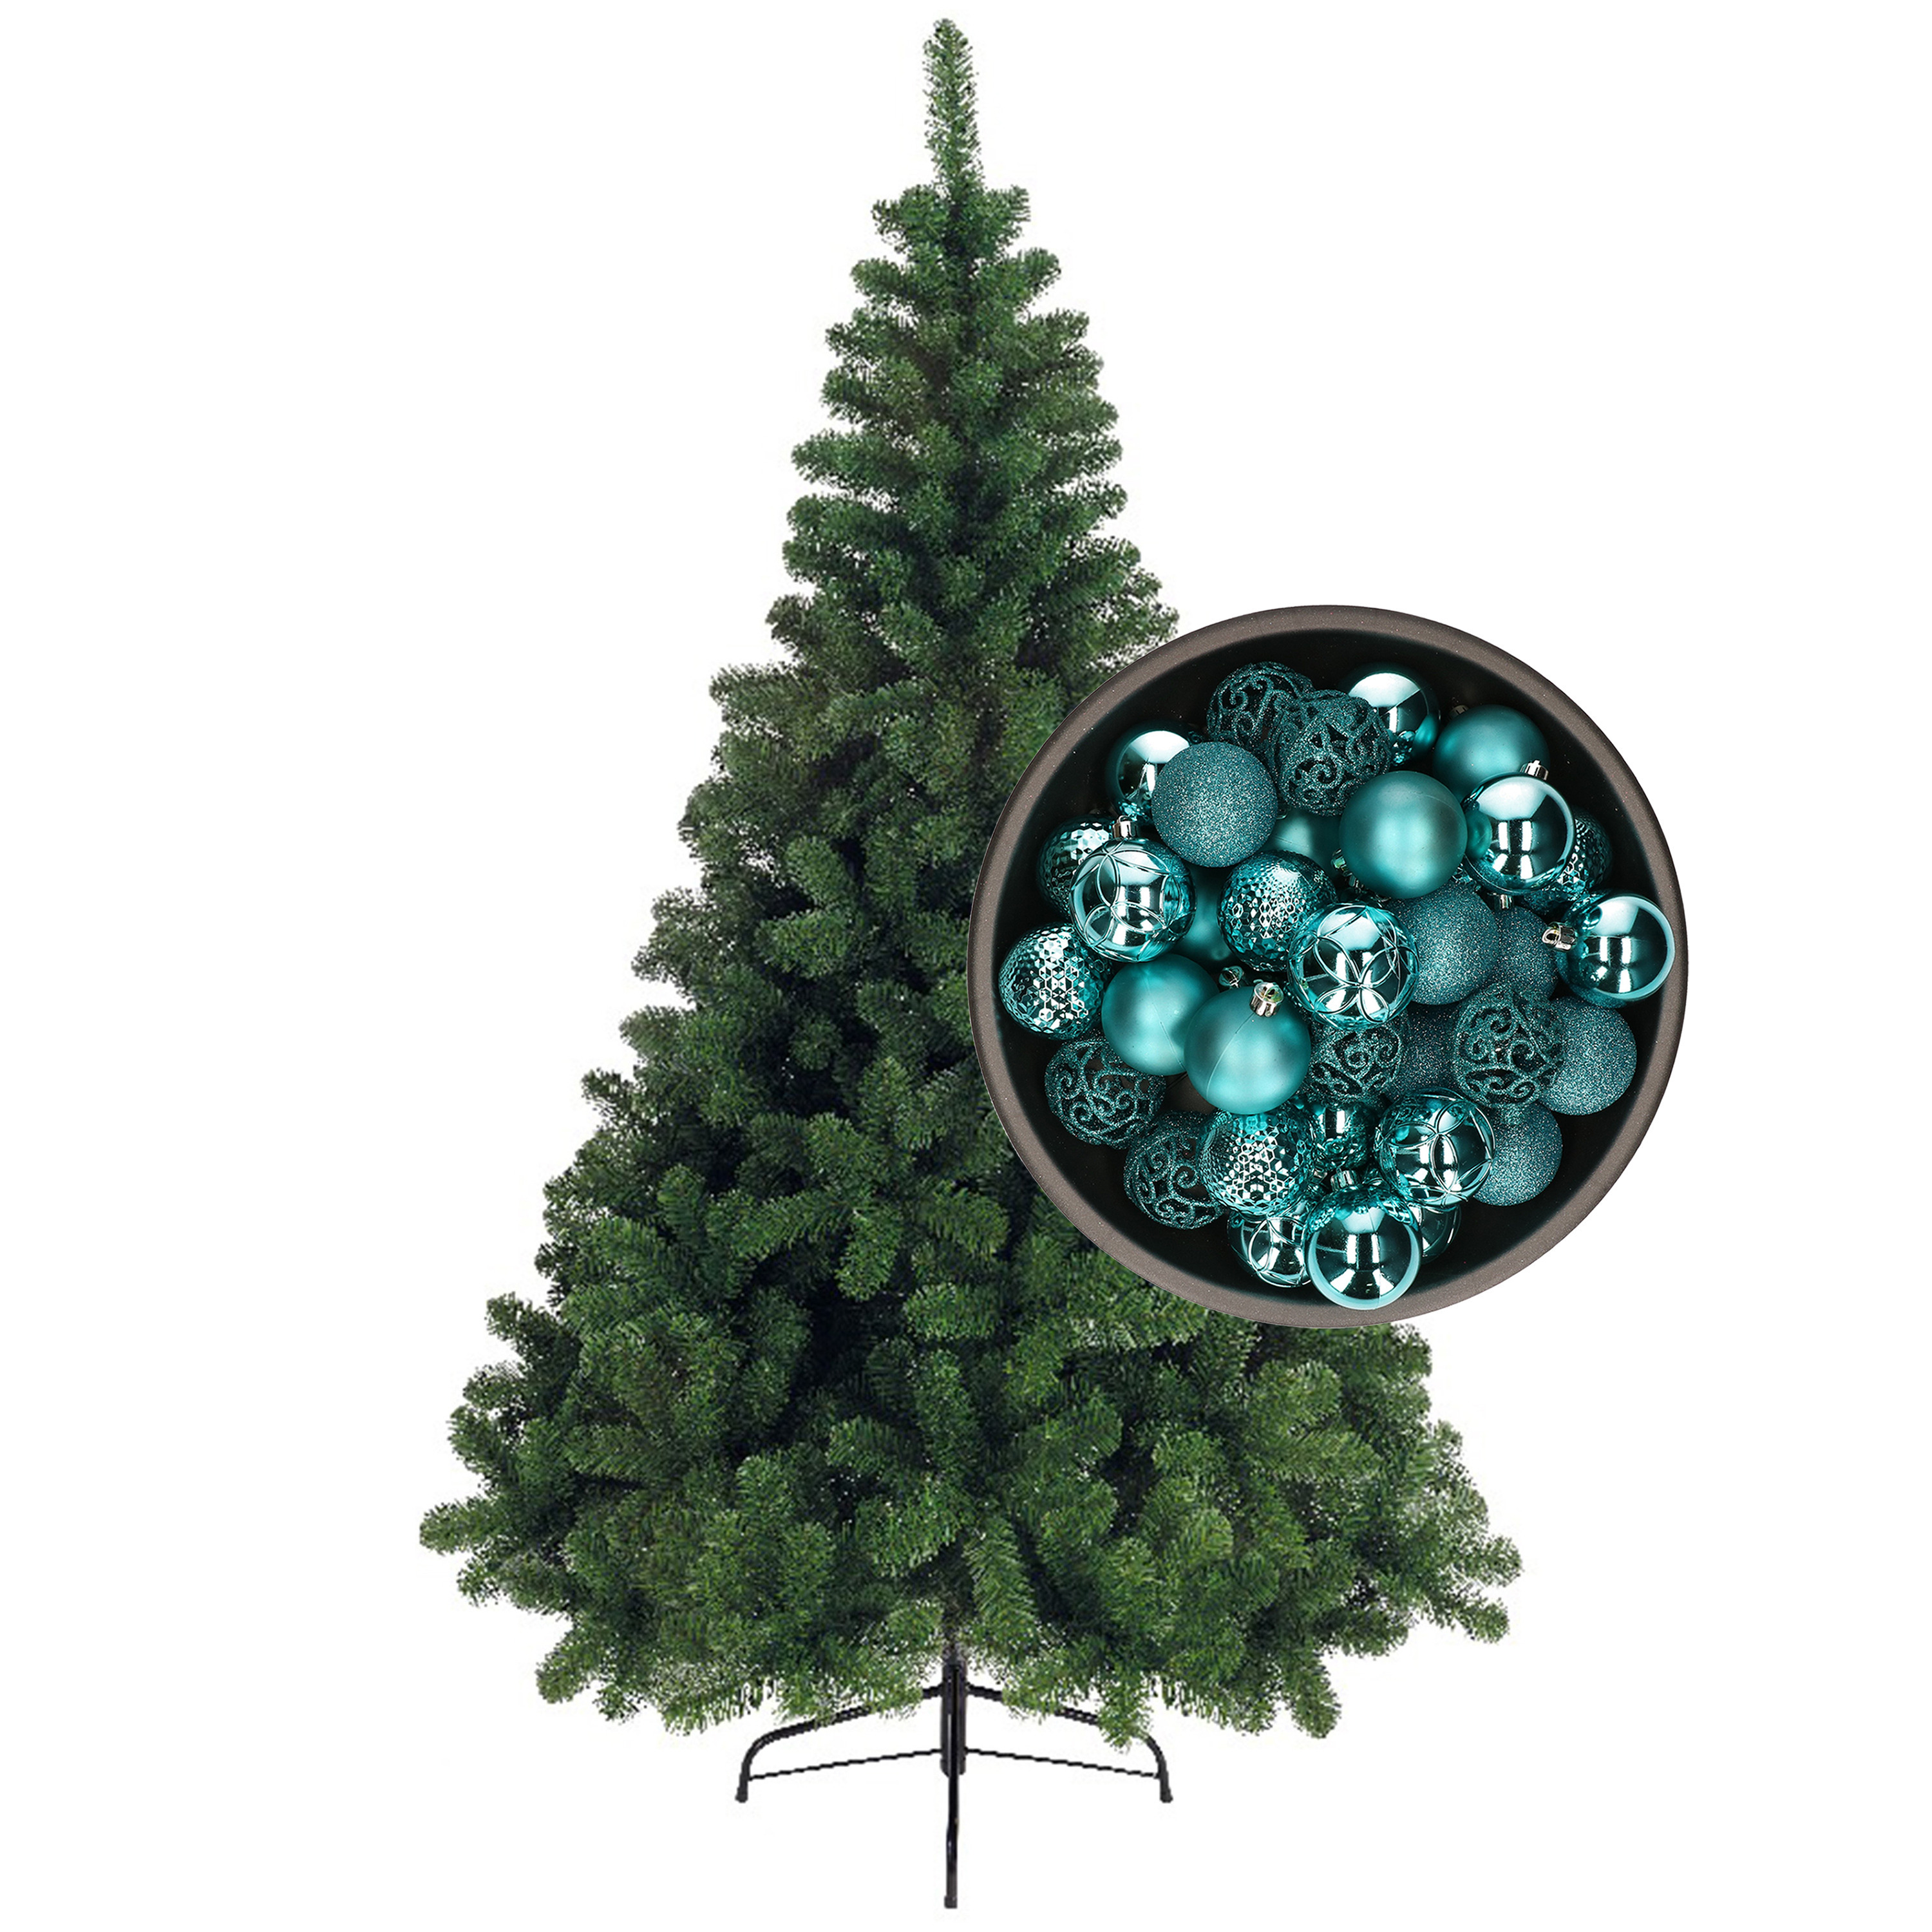 Bellatio Decorations kunst kerstboom 120 cm met kerstballen turquoise blauw